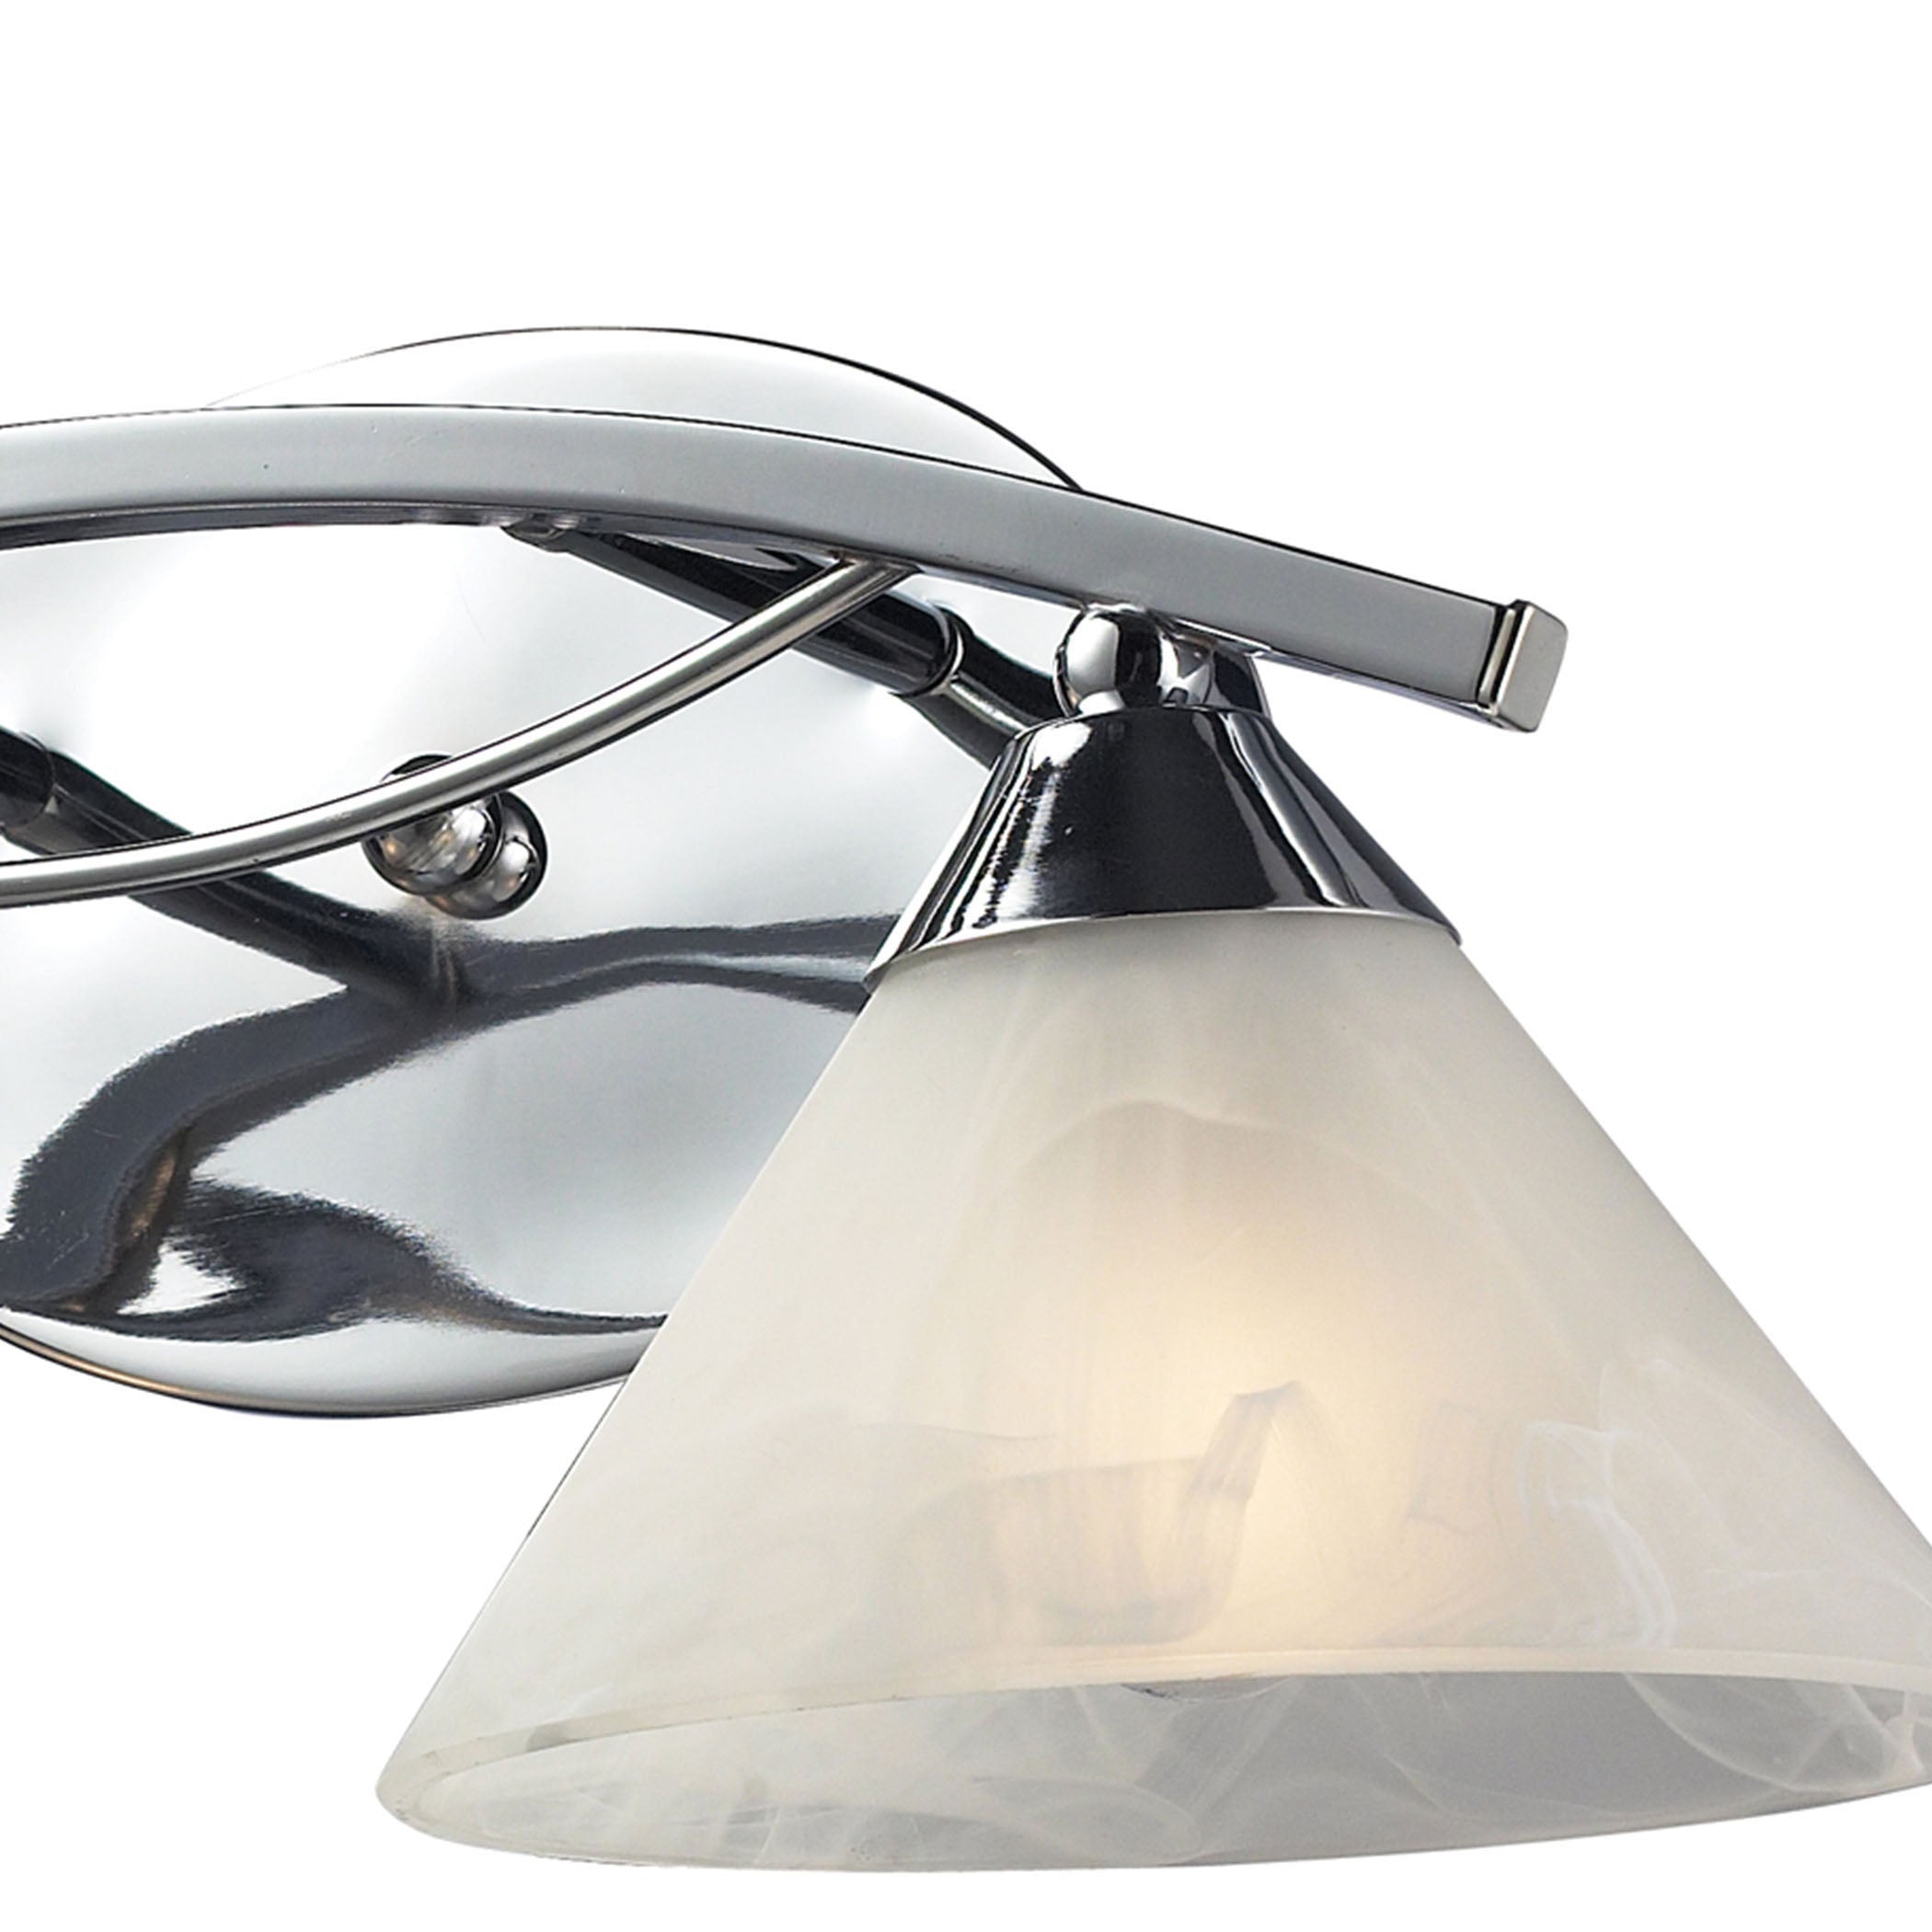 ELK Lighting 17021/2 Elysburg 2-Light Vanity Lamp in Polished Chrome with White Marbleized Glass